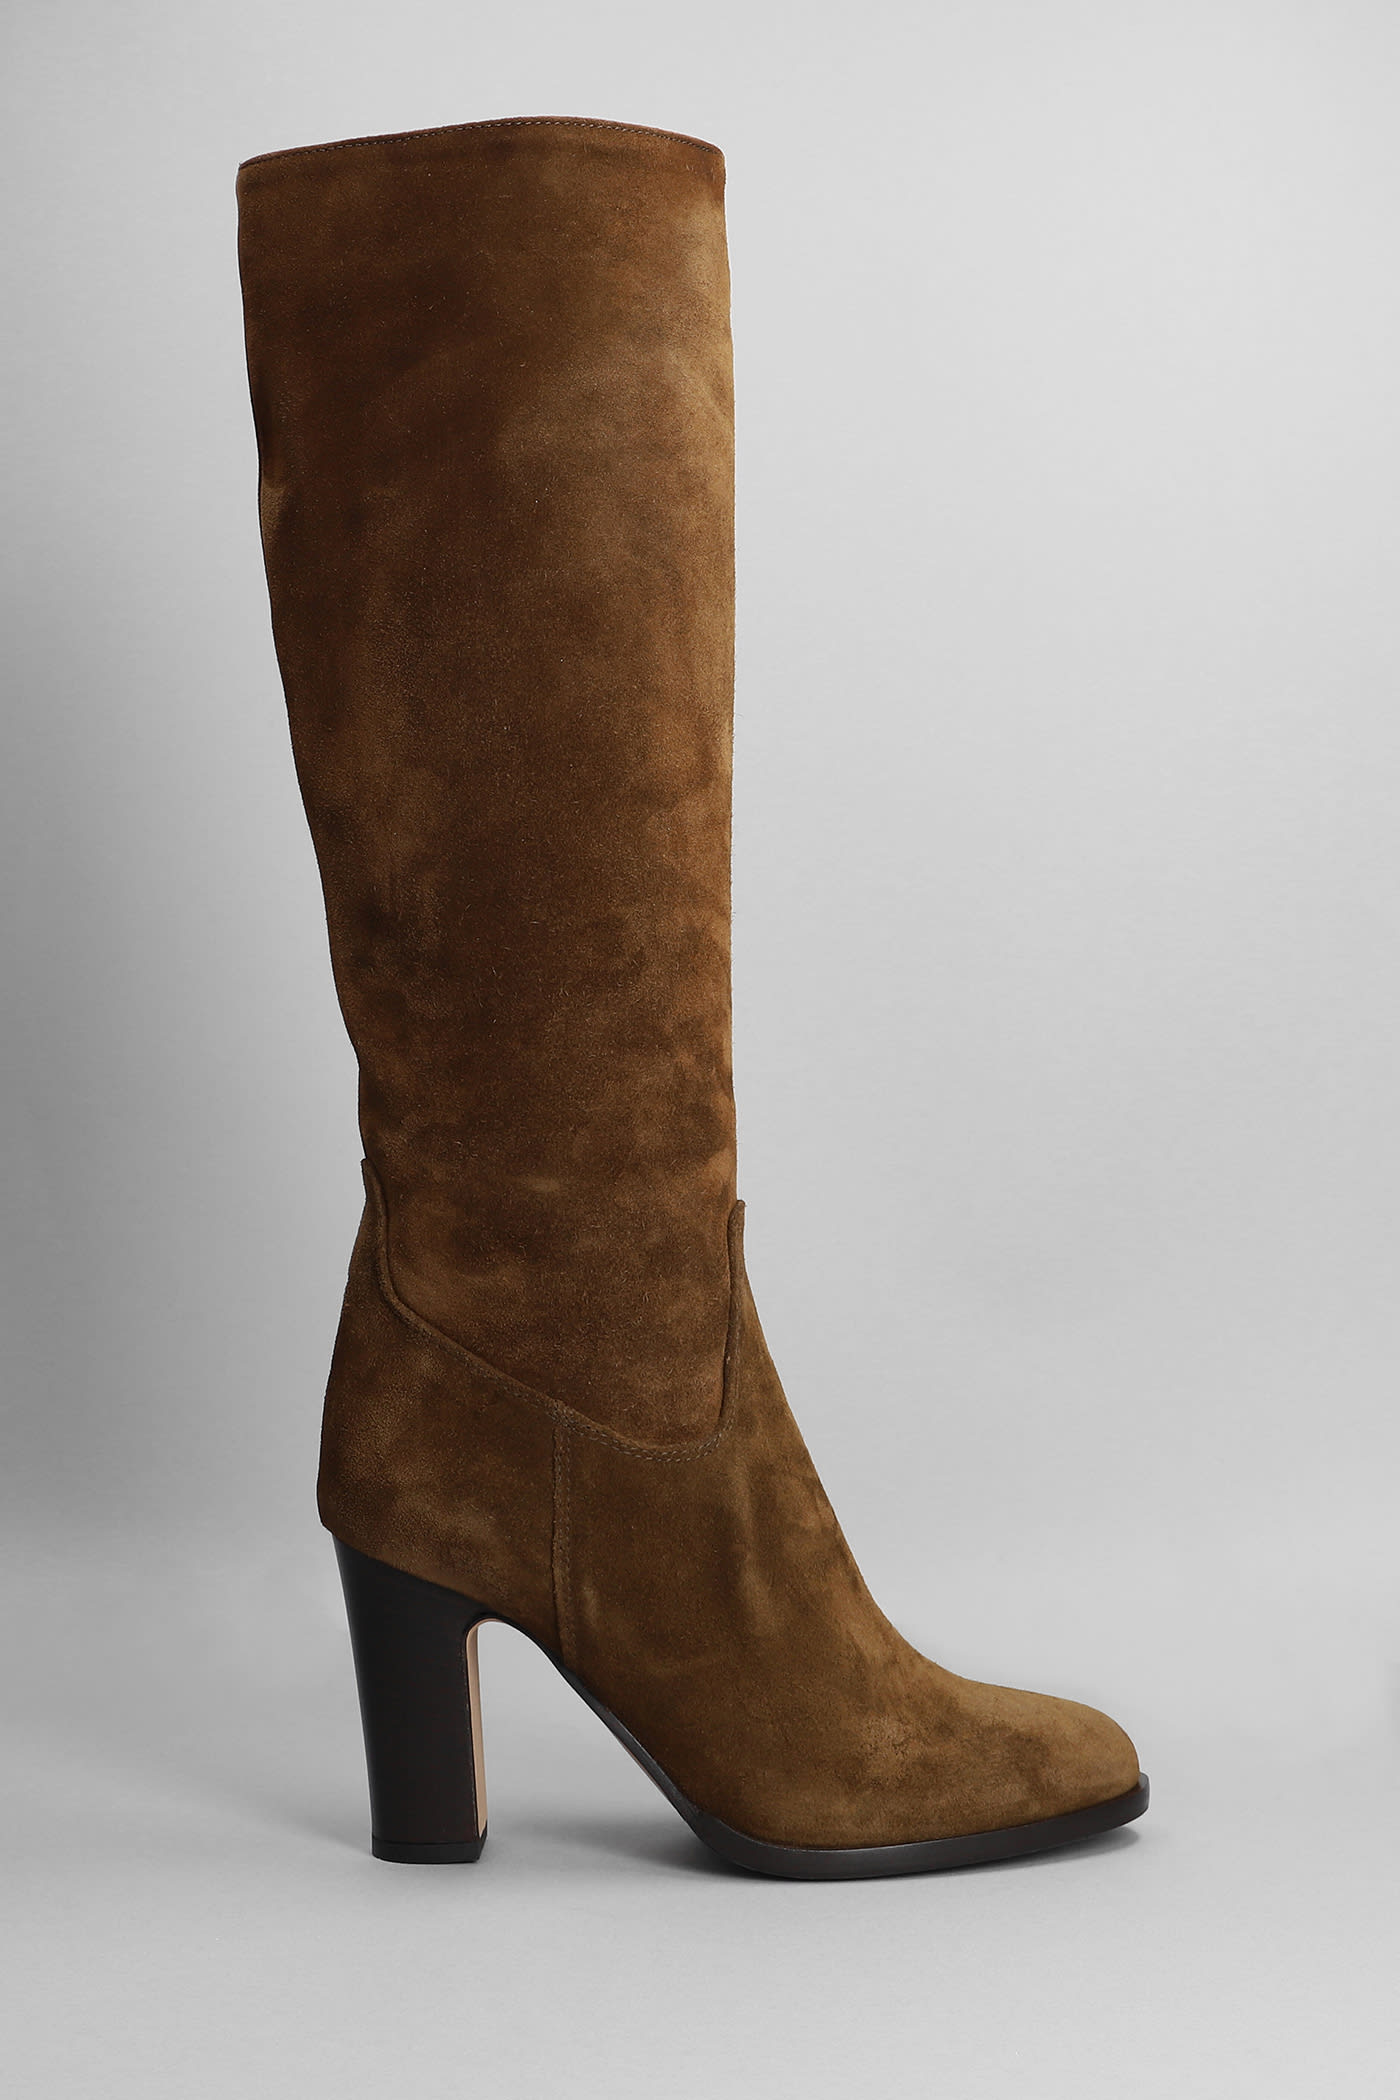 Julie Dee High Heels Boots In Brown Suede